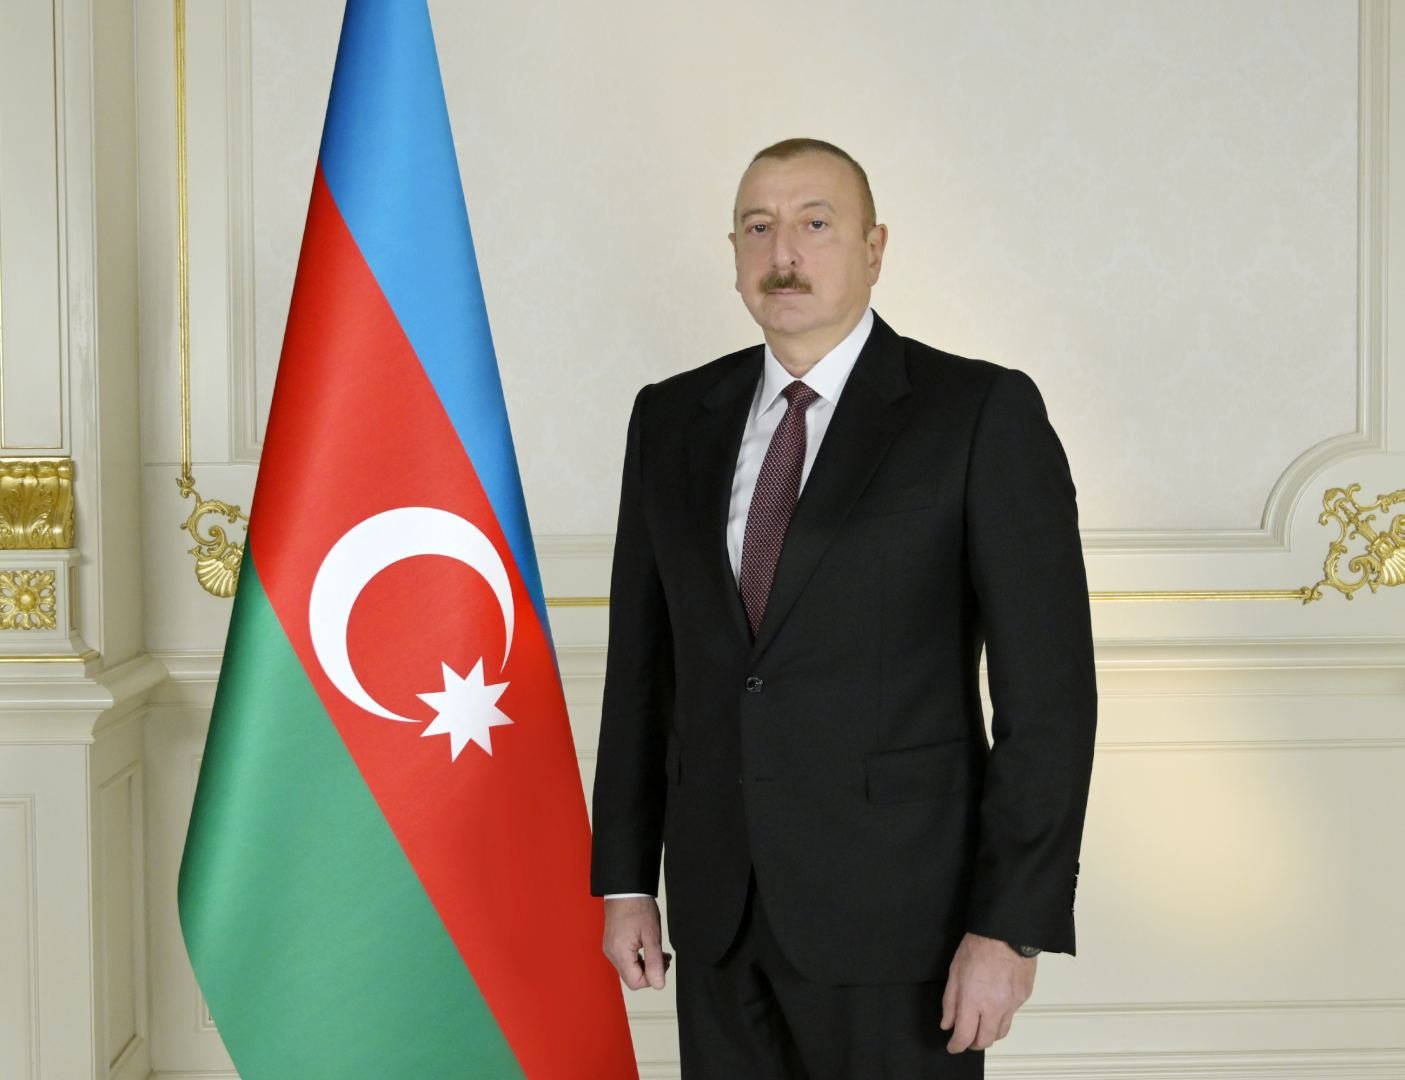 Президент Ильхам Алиев: Азербайджано-сербские отношения построены на прочной дружбе, взаимном доверии и взаимопонимании